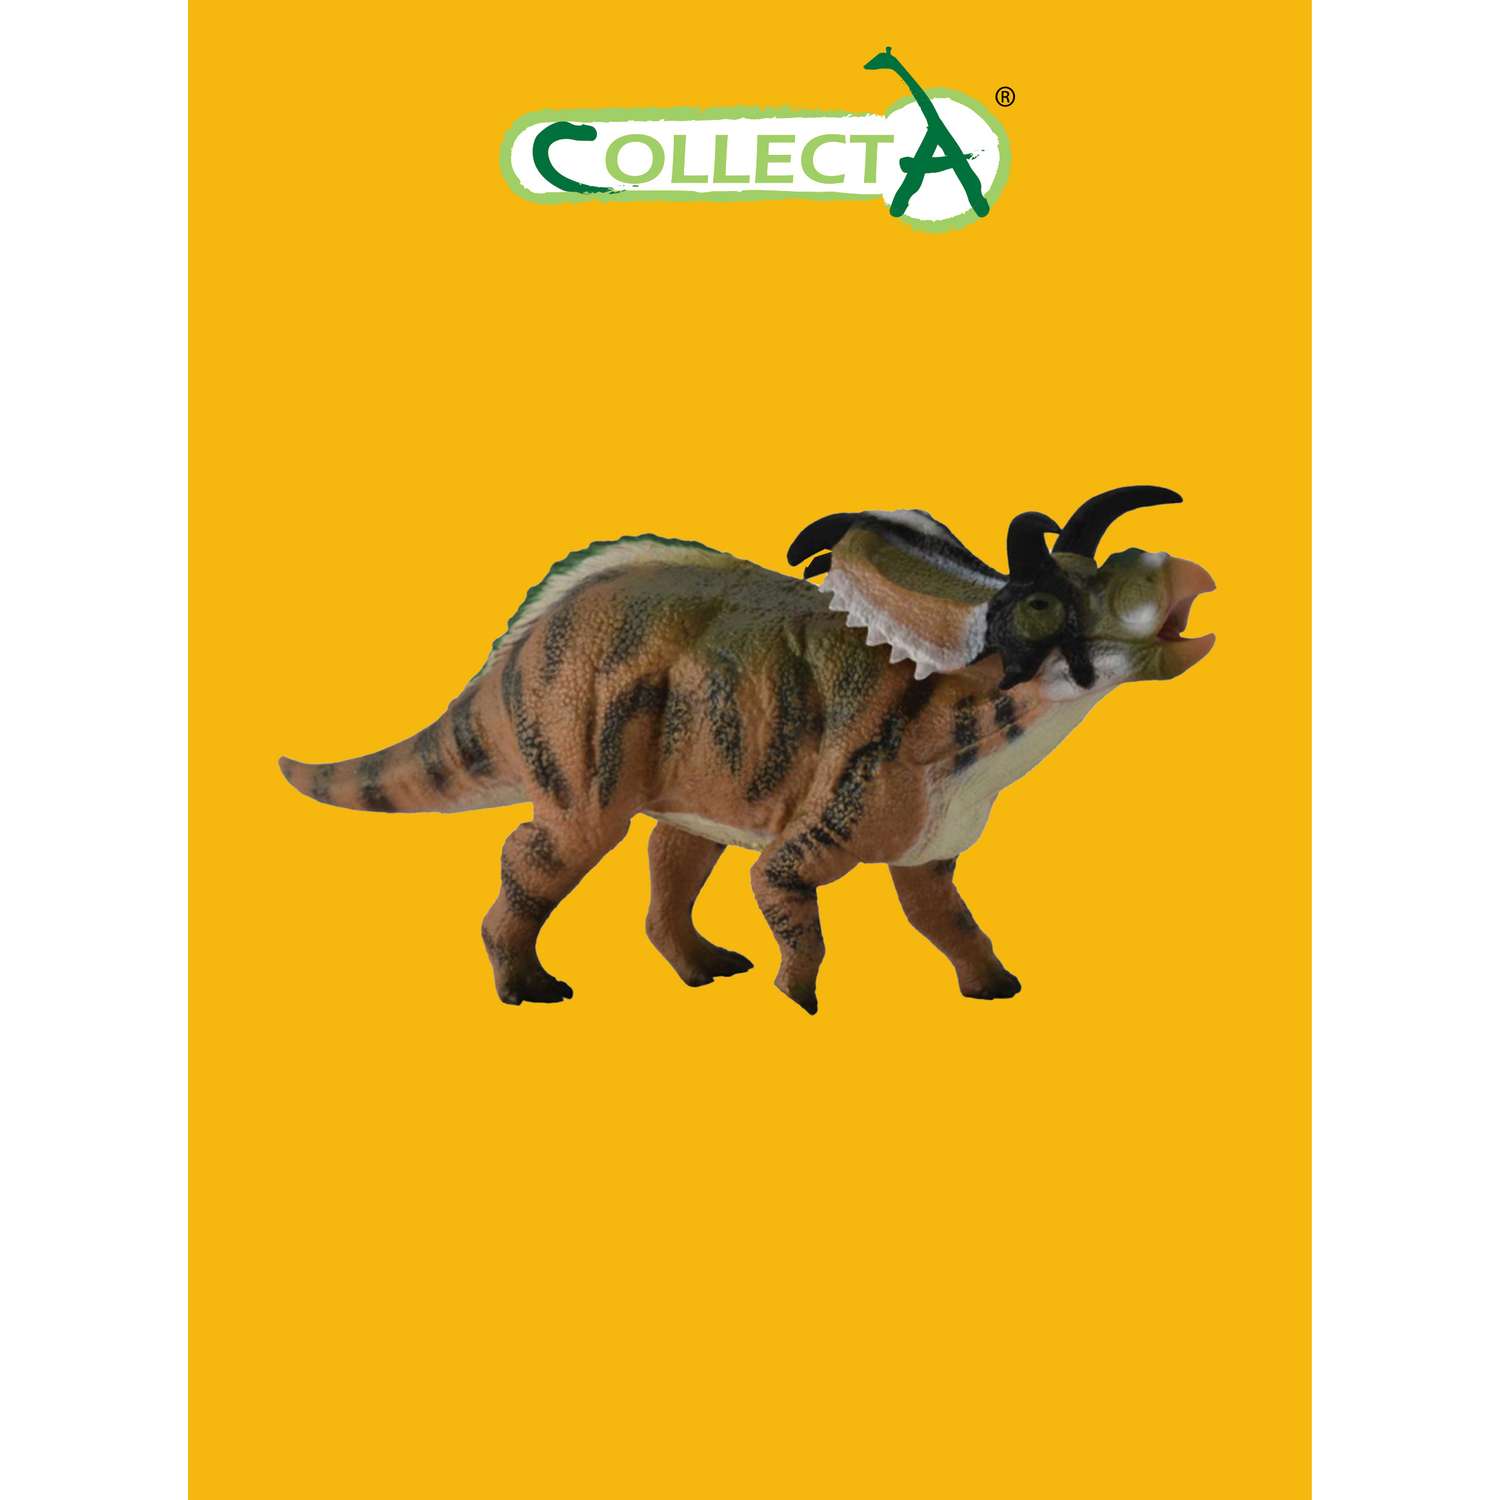 Игрушка Collecta Медузацератопс фигурка динозавра - фото 1